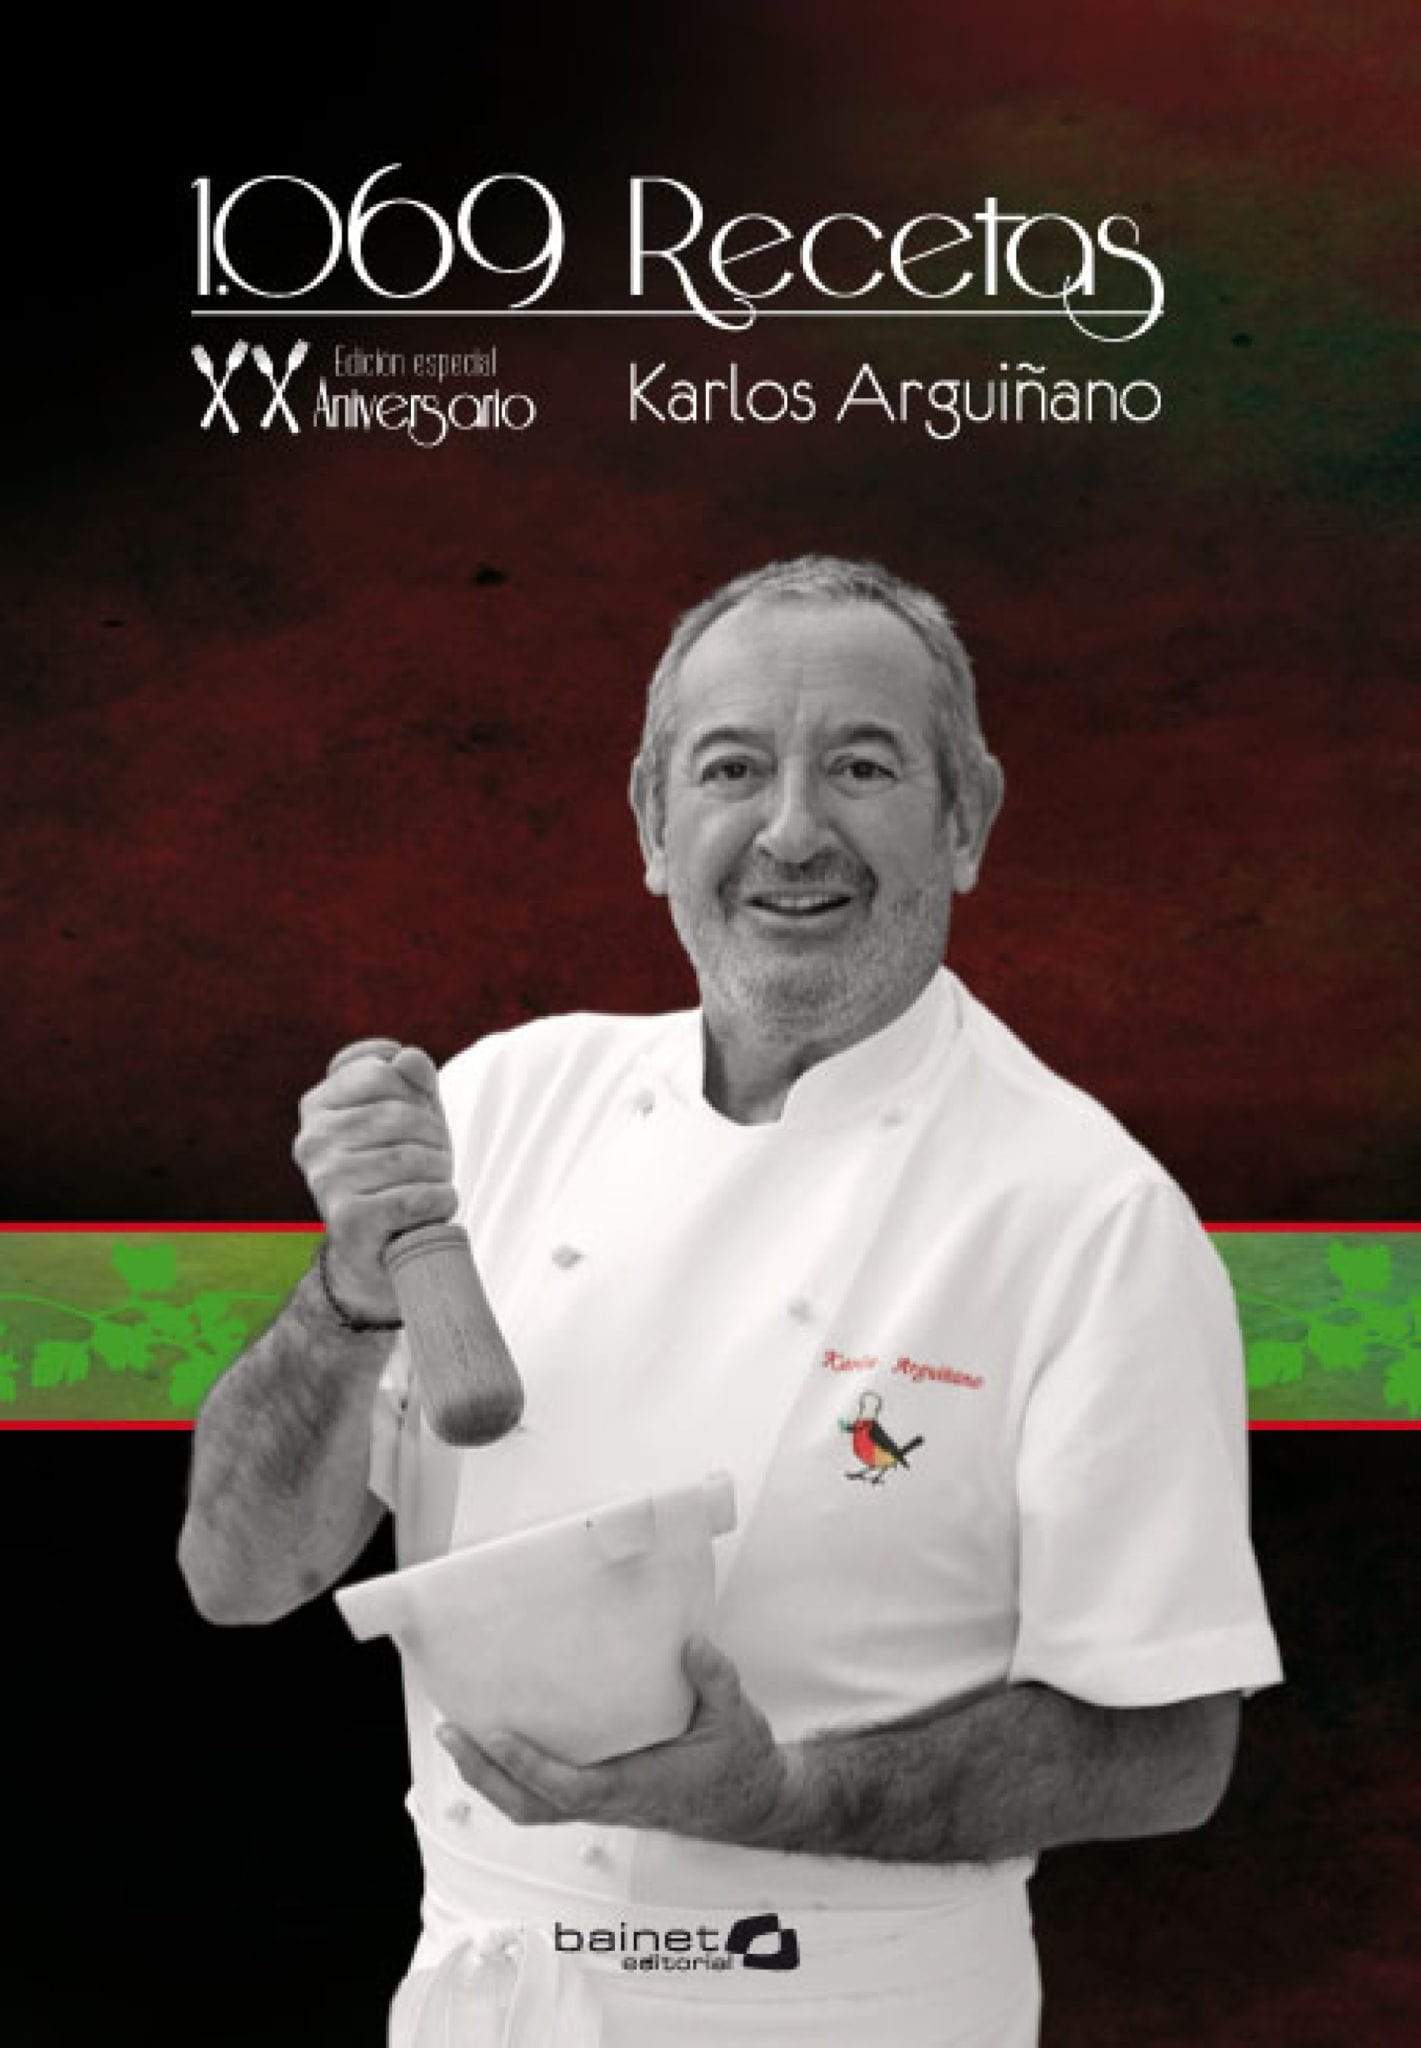 Cocinando con Karlos Arguiñano (Spanish Edition) by Karlos